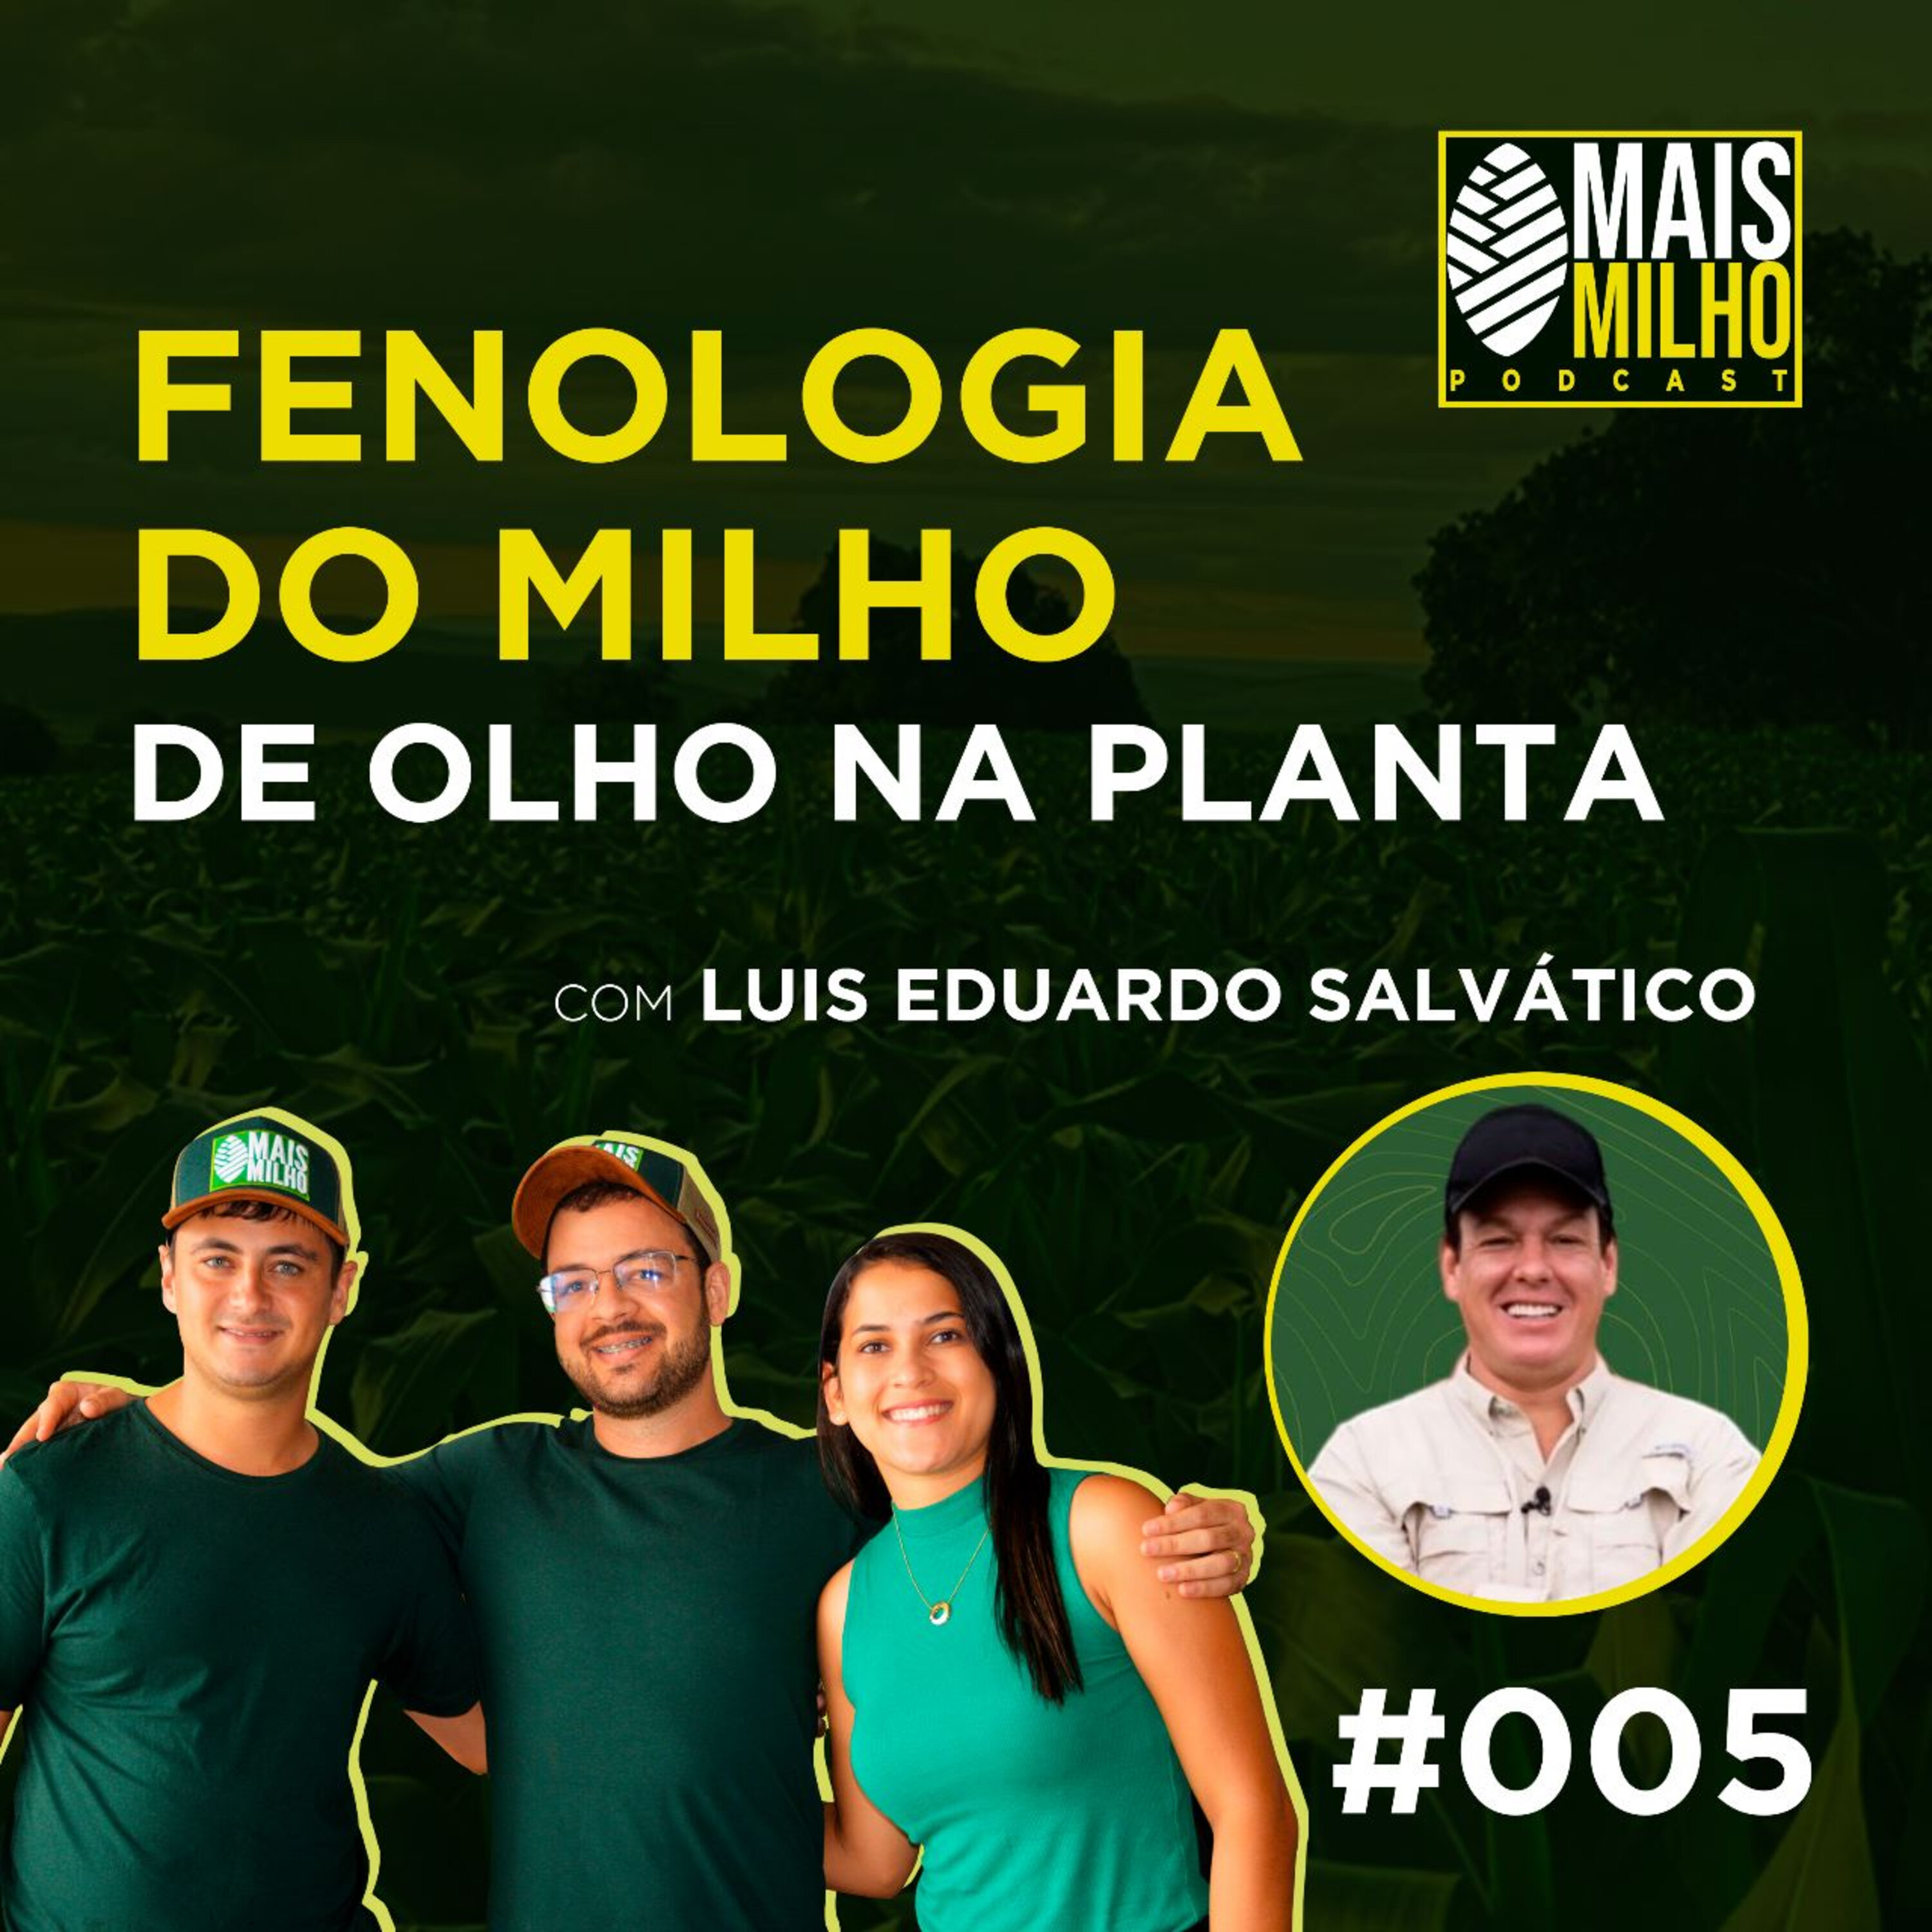 #005 - LUIS EDUARDO SALVÁTICO: FENOLOGIA DO MILHO DE OLHO NA PLANTA